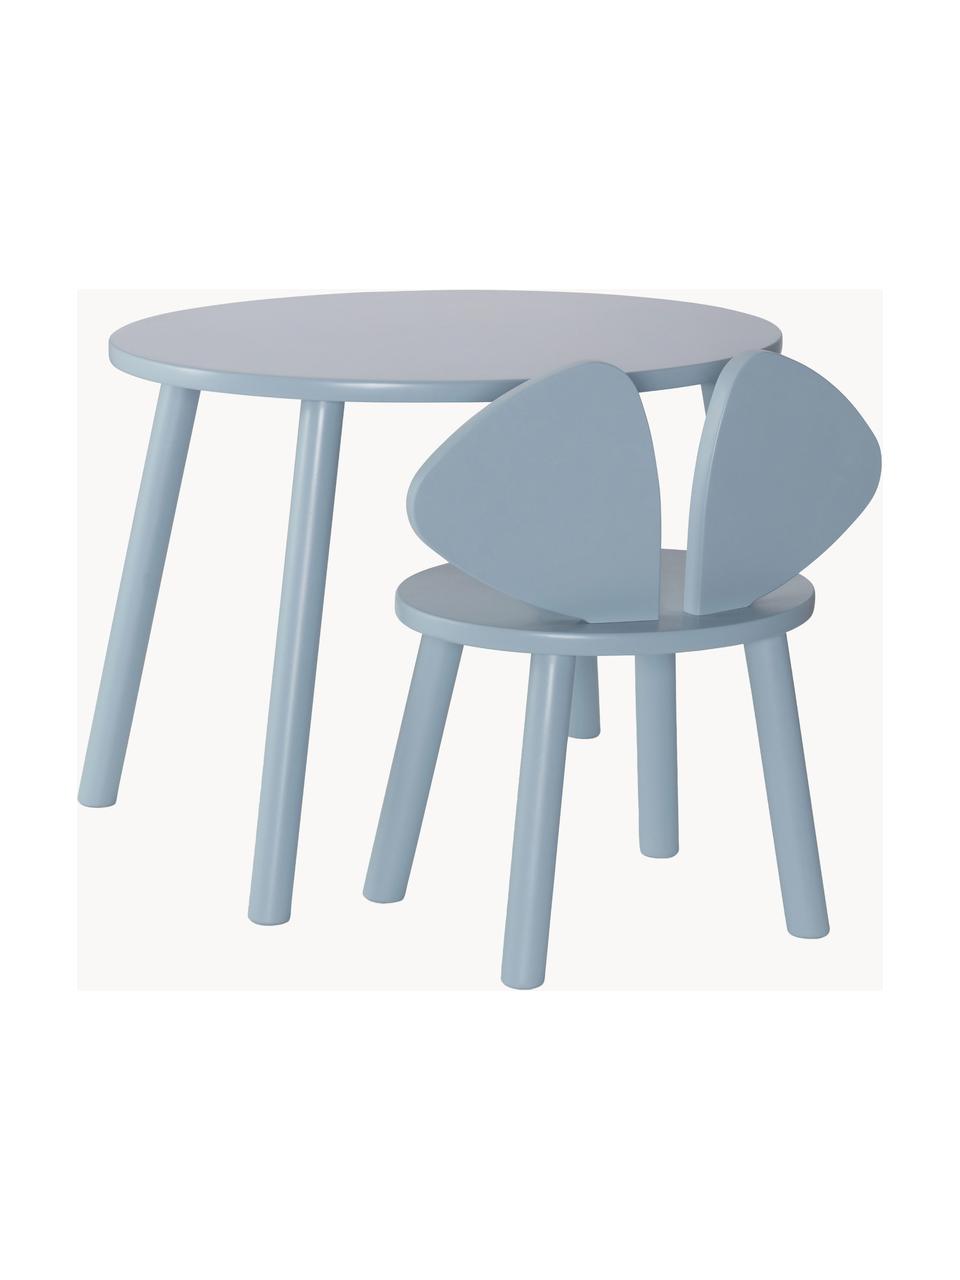 Table avec chaise pour enfant Mouse, 2 pièces, Bleu ciel, Lot de différentes tailles